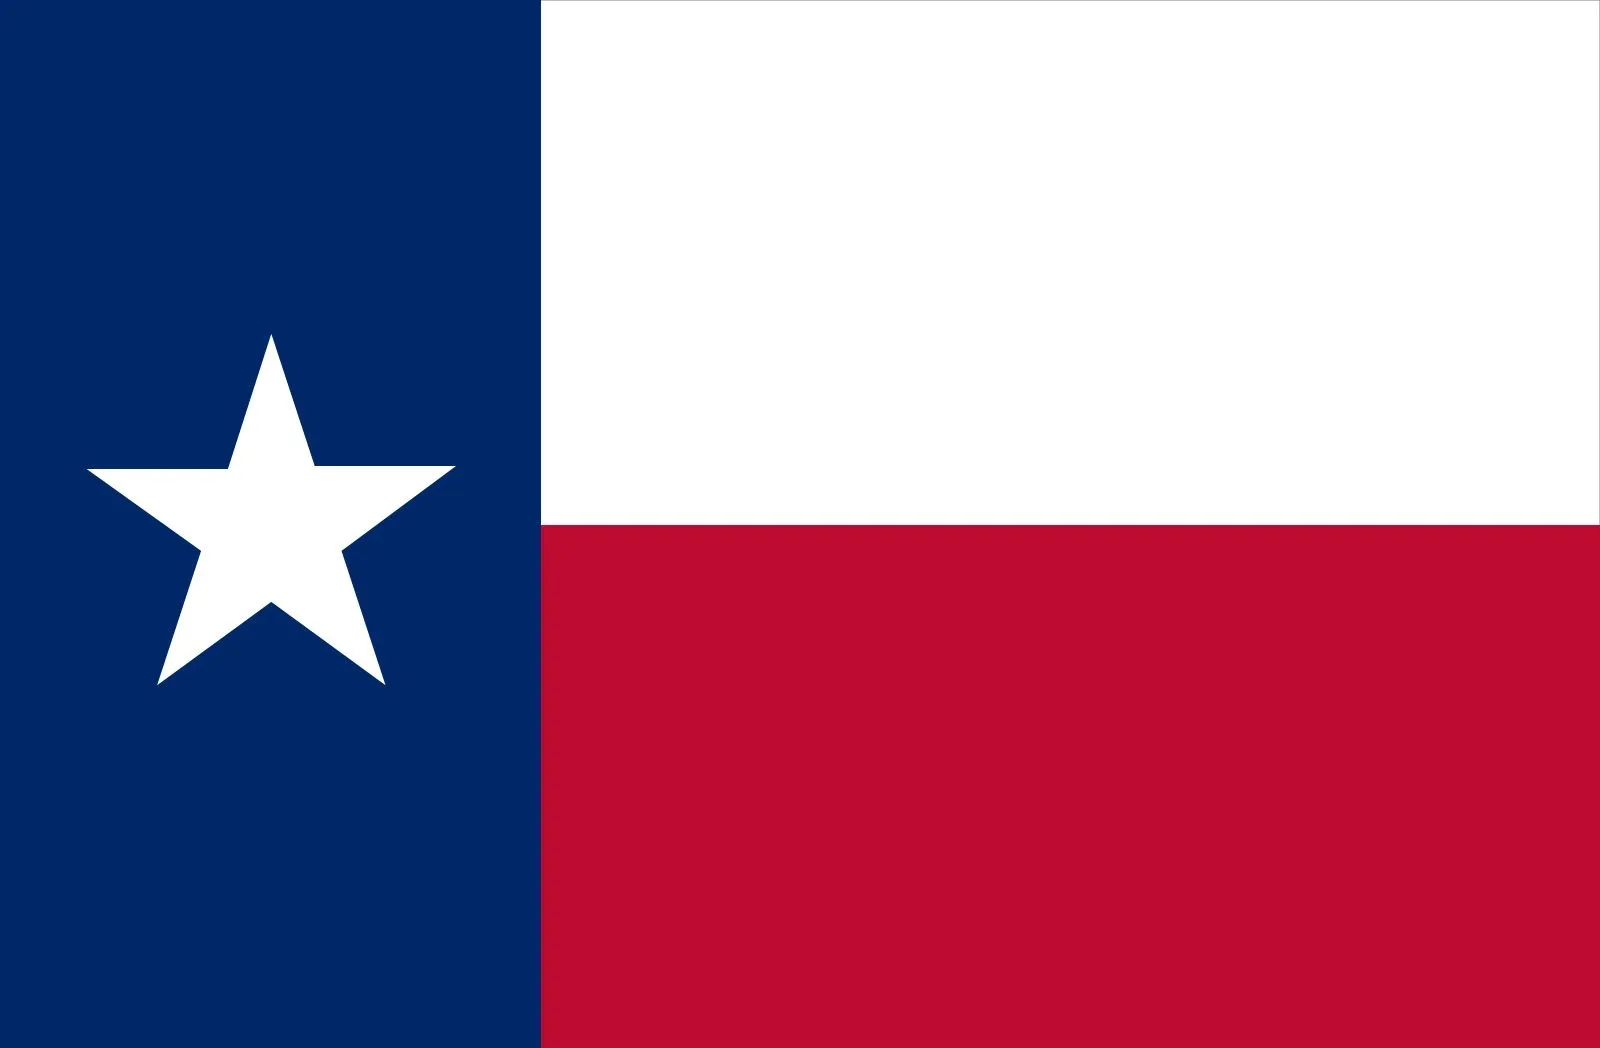 Avatar of Texas